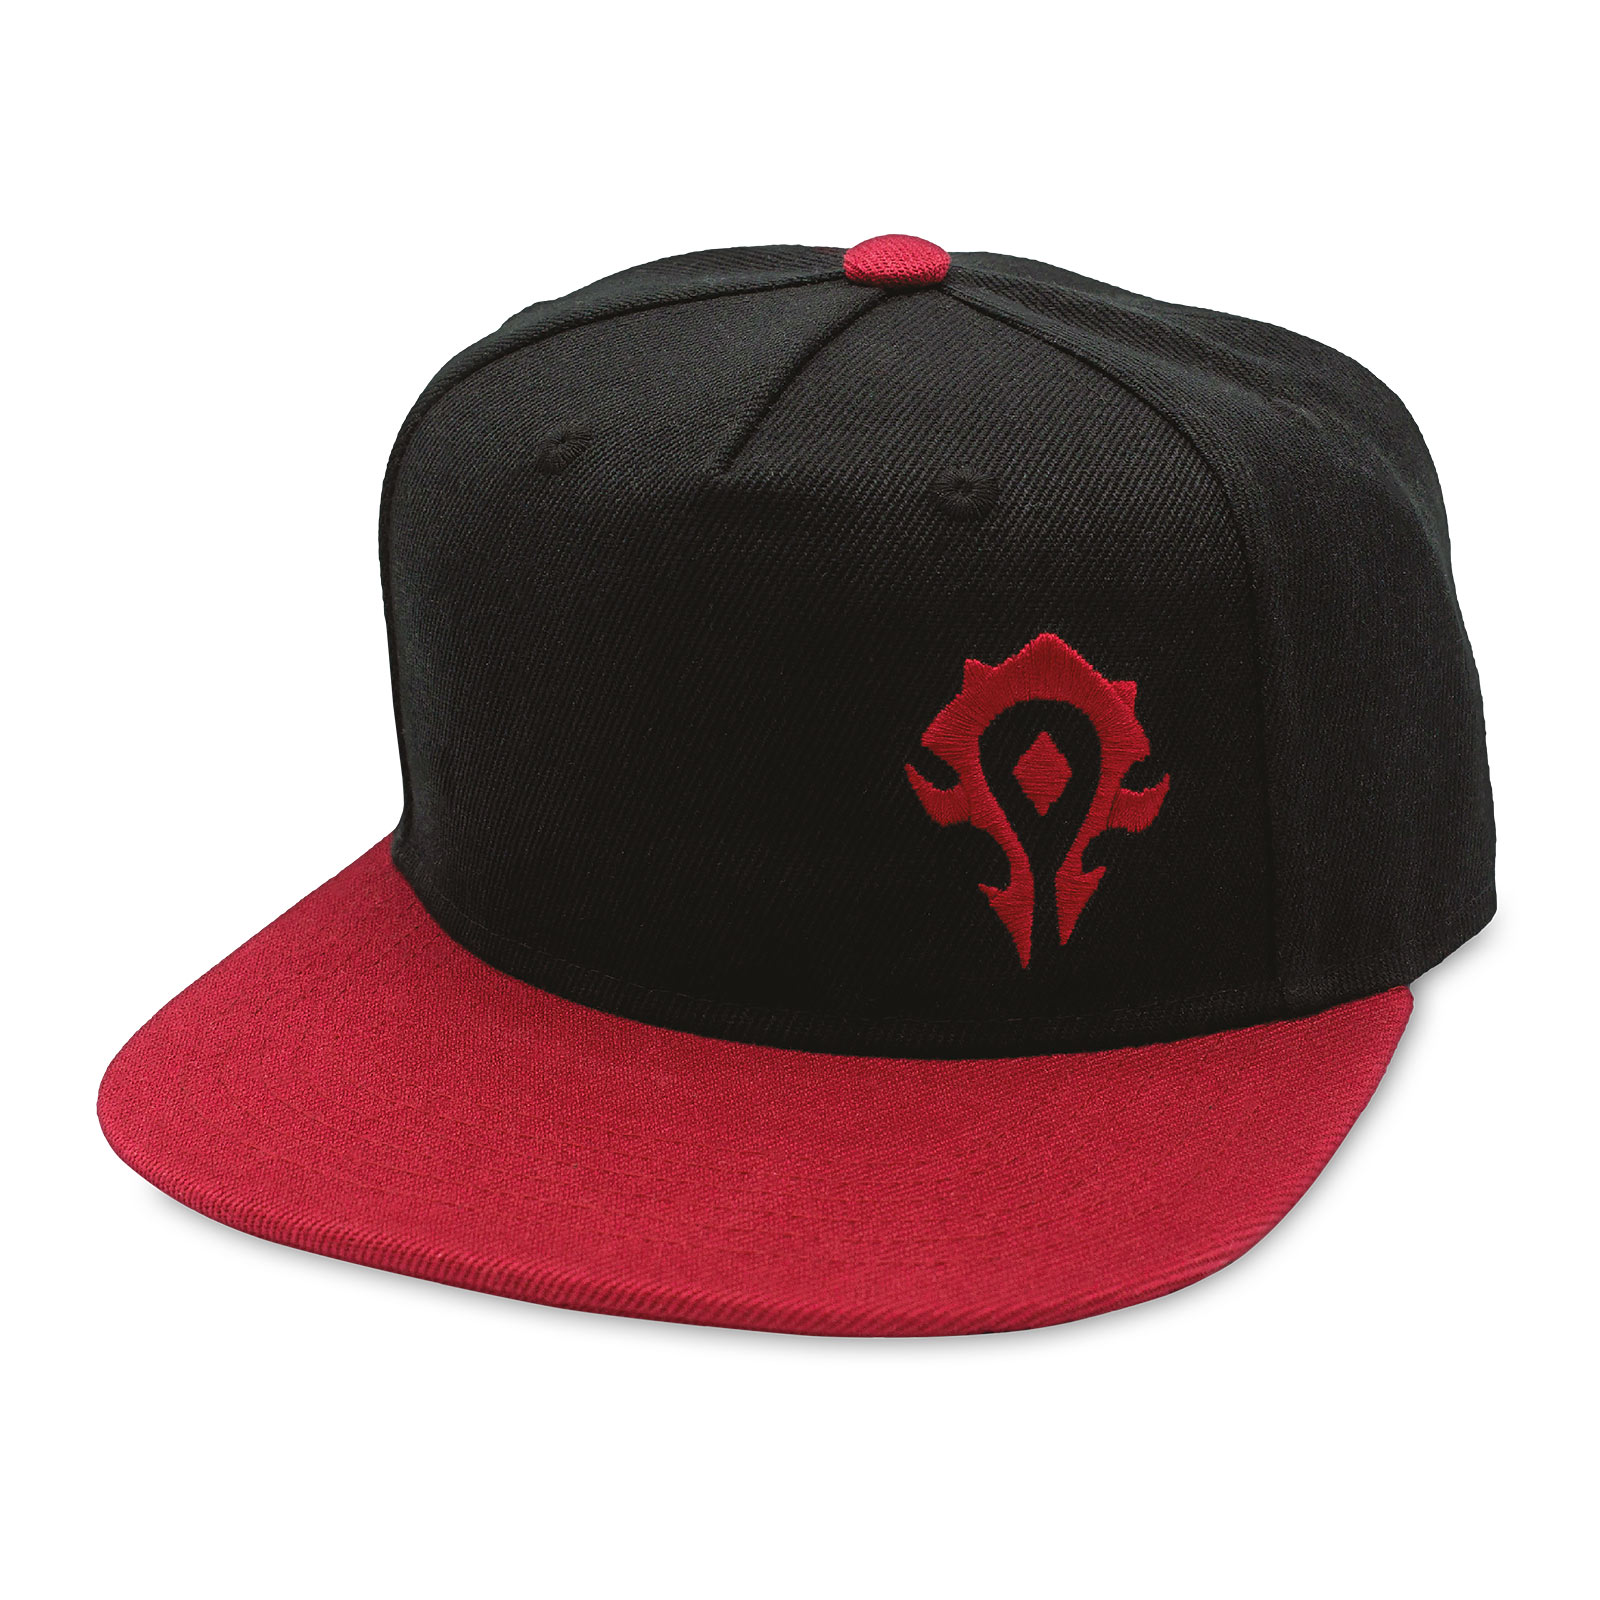 World of Warcraft - Horde Logo Snapback Cap black-red